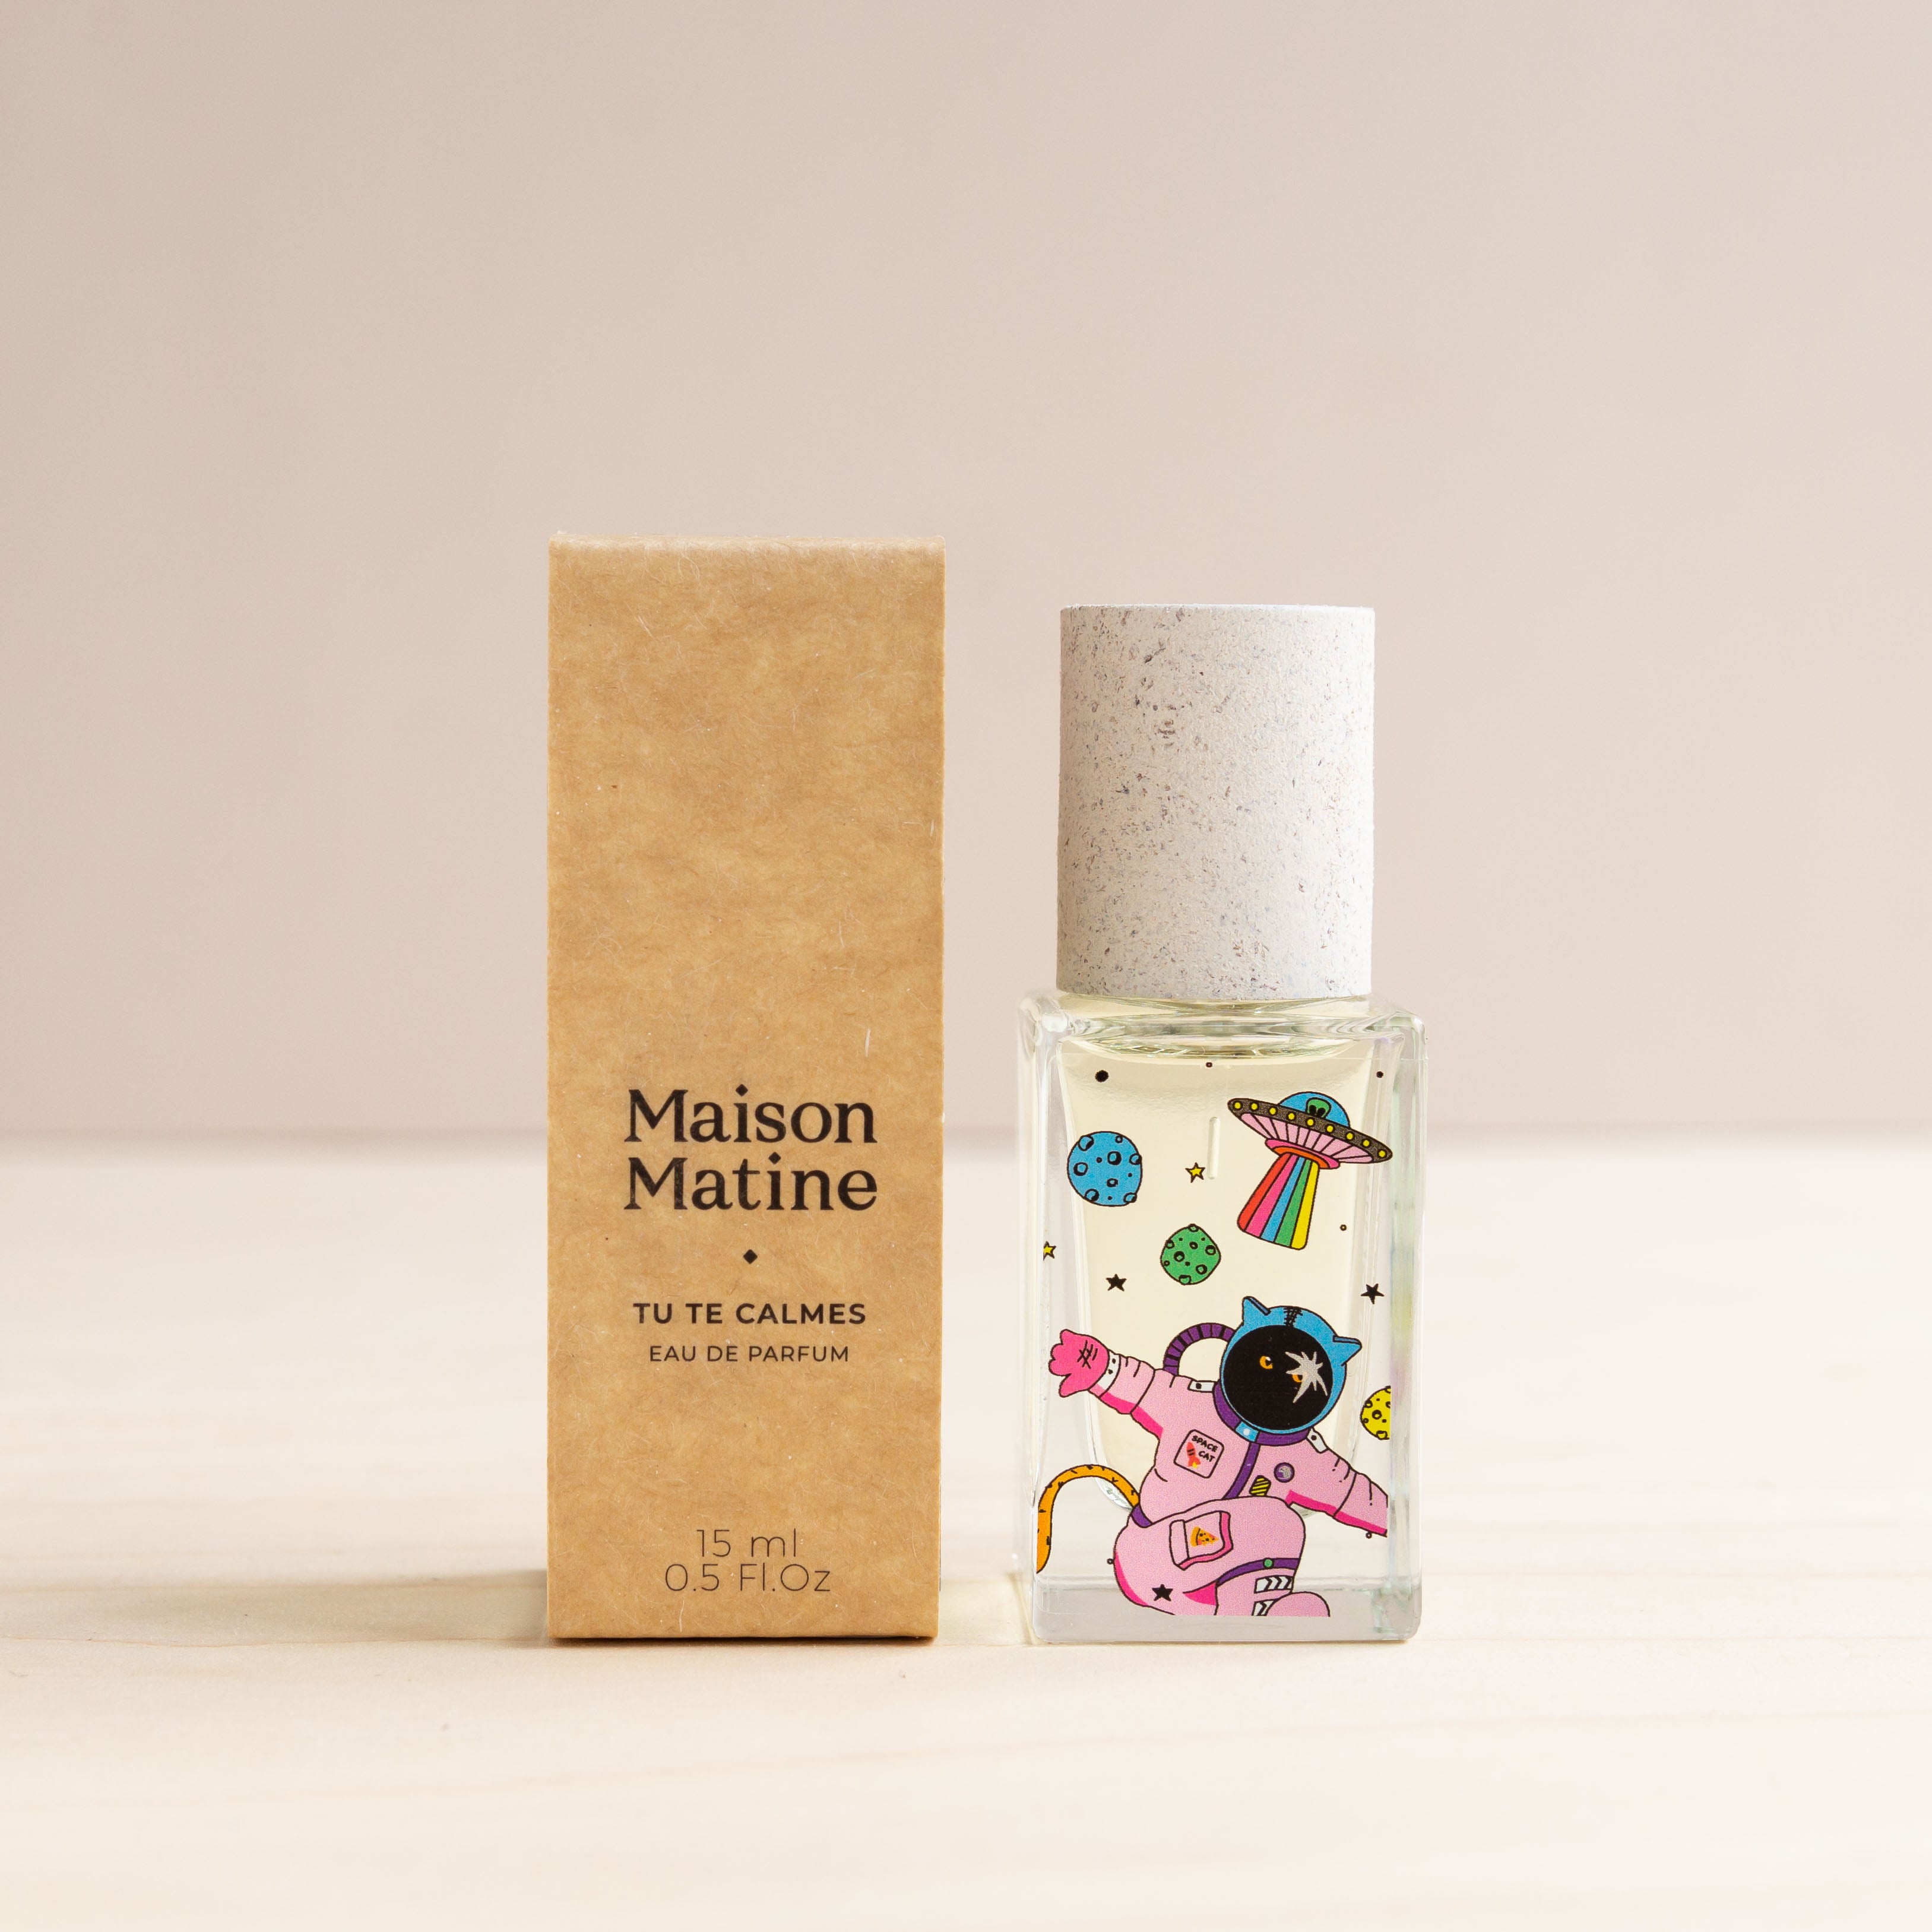 Maison Matine: Eau de parfum 15ml